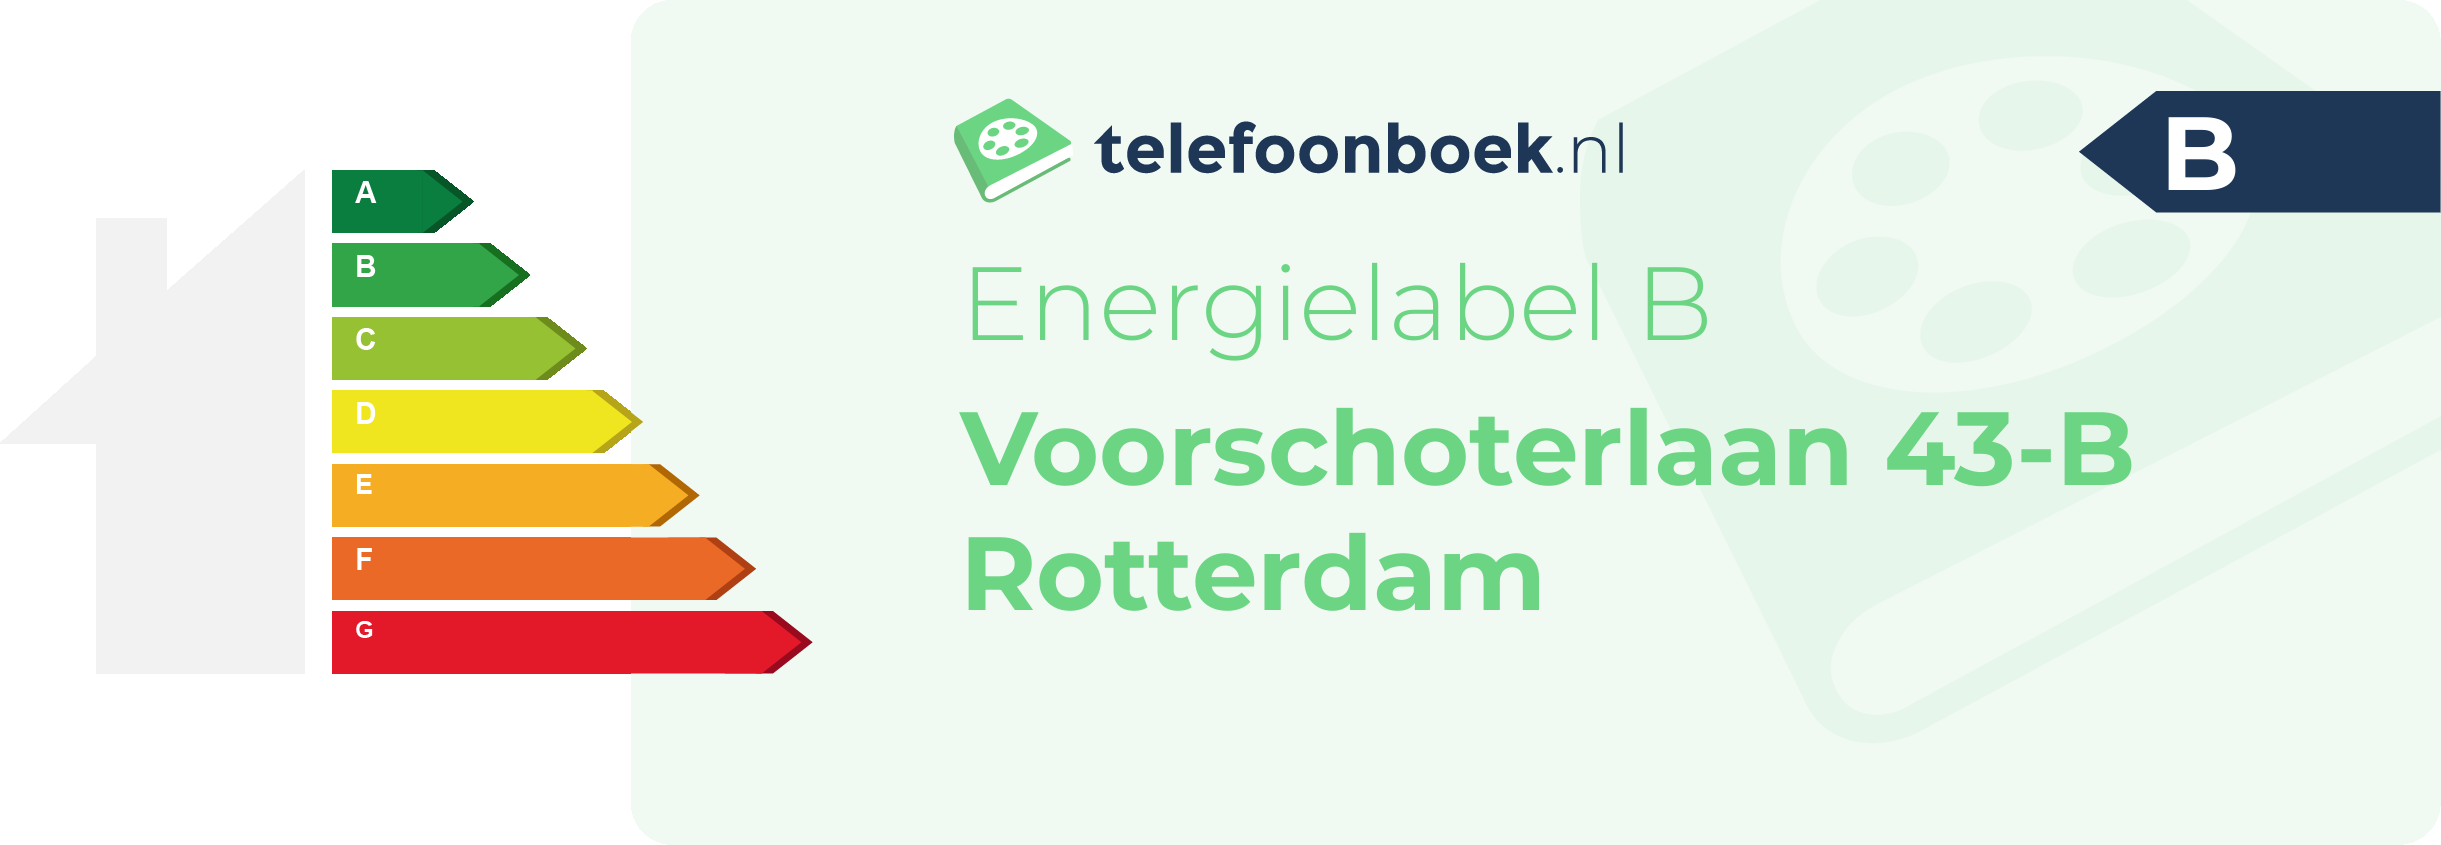 Energielabel Voorschoterlaan 43-B Rotterdam